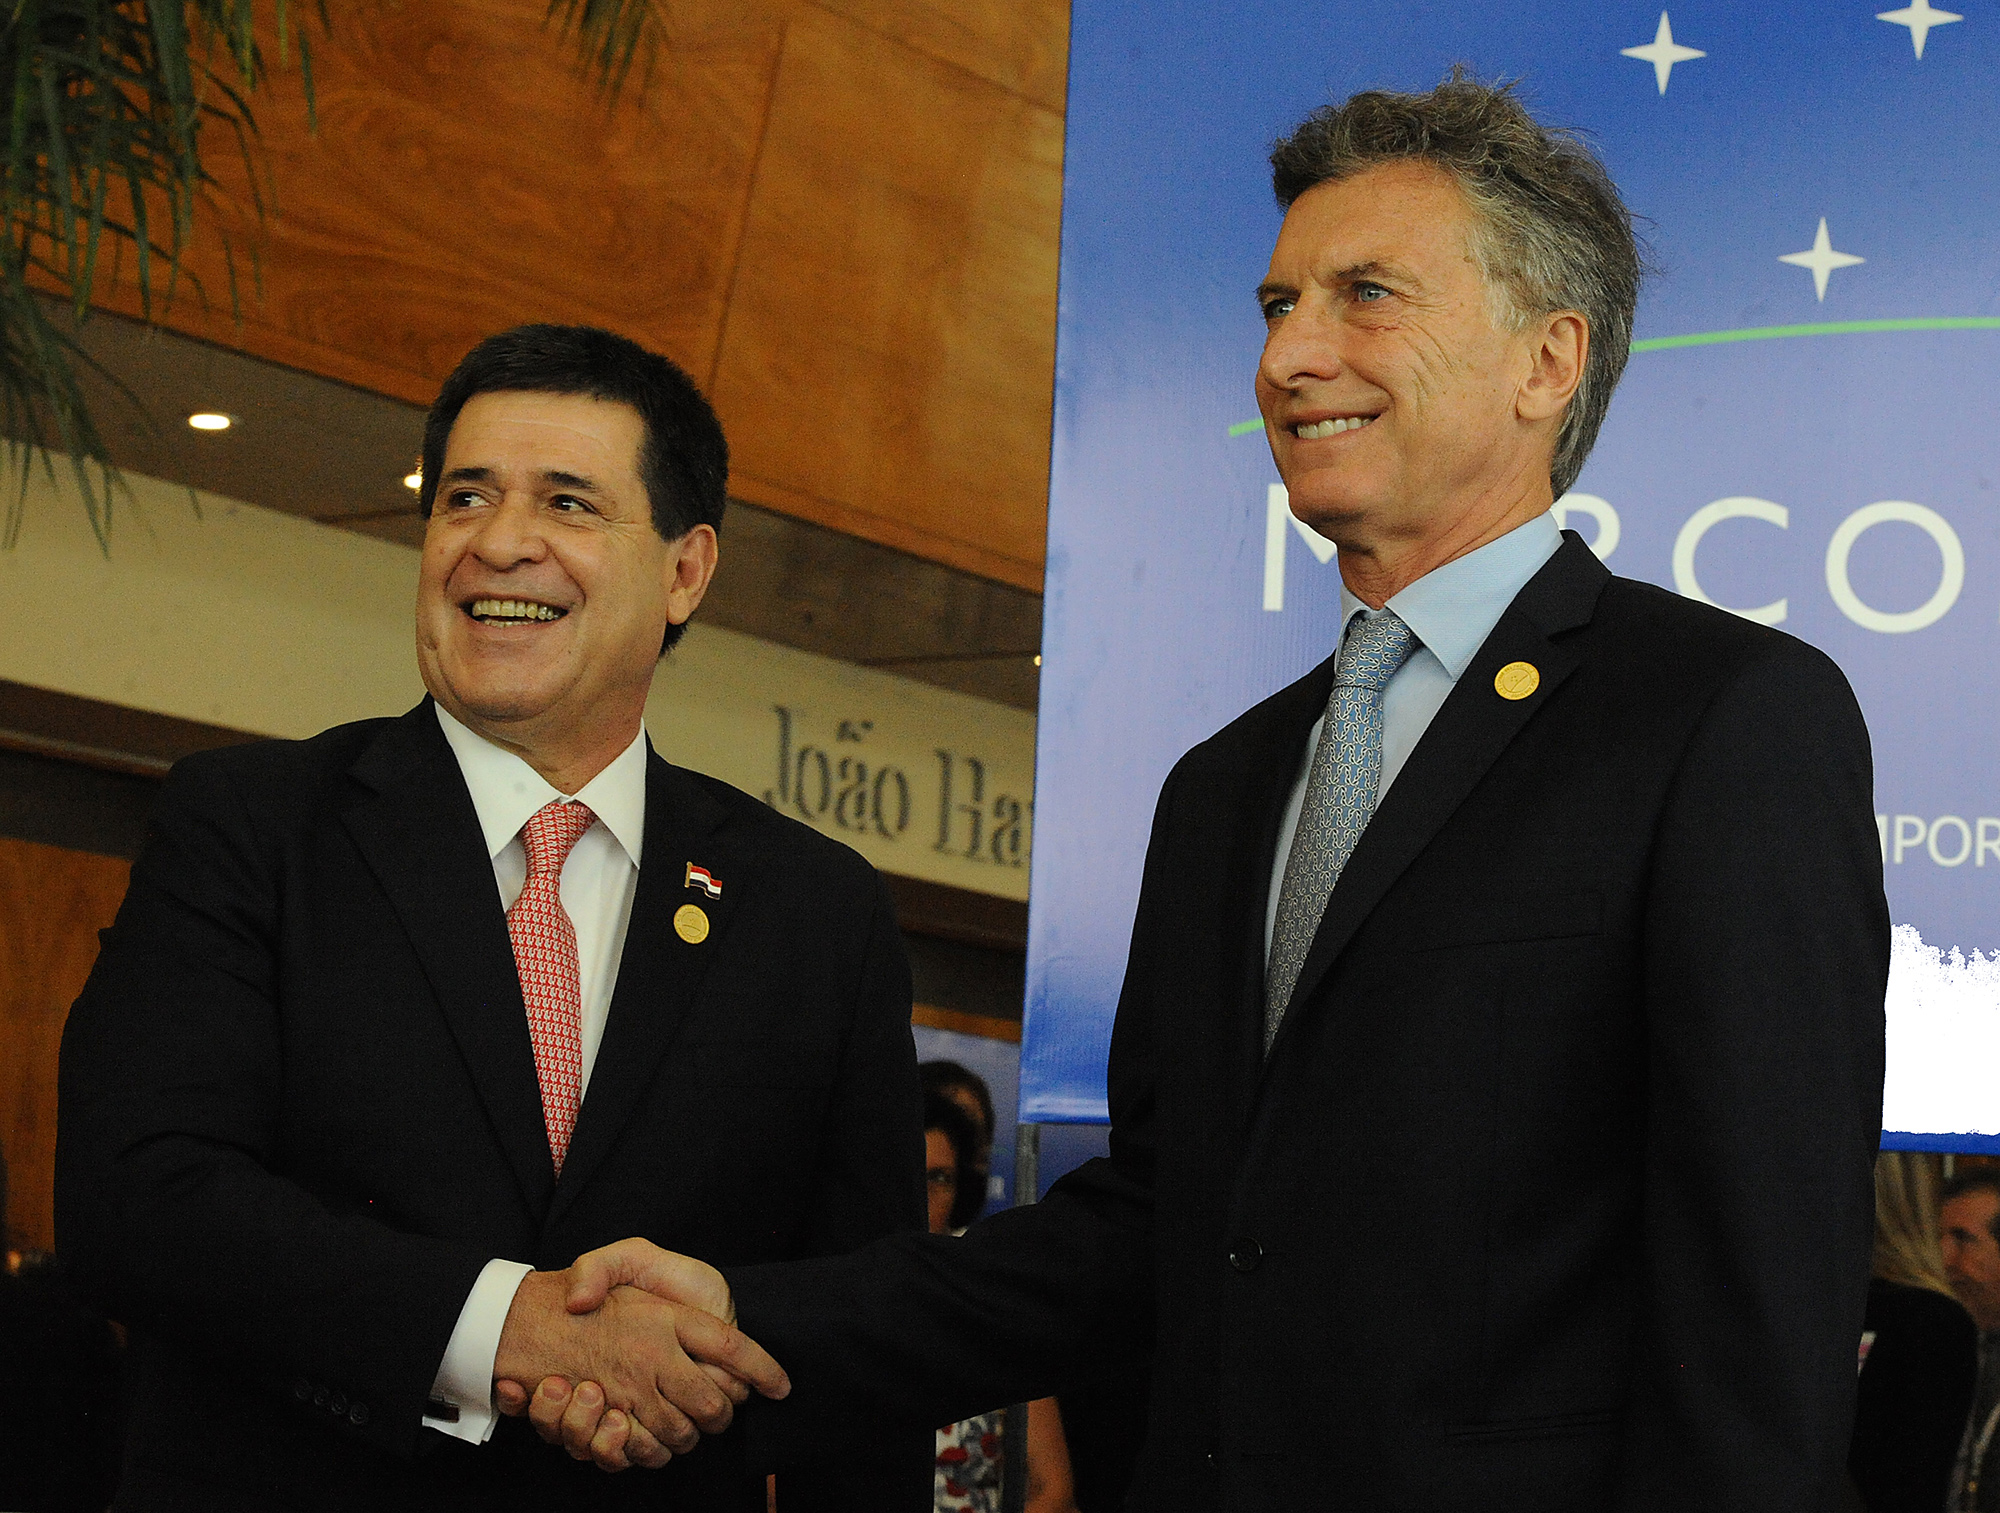 El Presidente saludó a su par de paraguay, Horacio Cartés, en la 49° Cumbre del Mercosur.